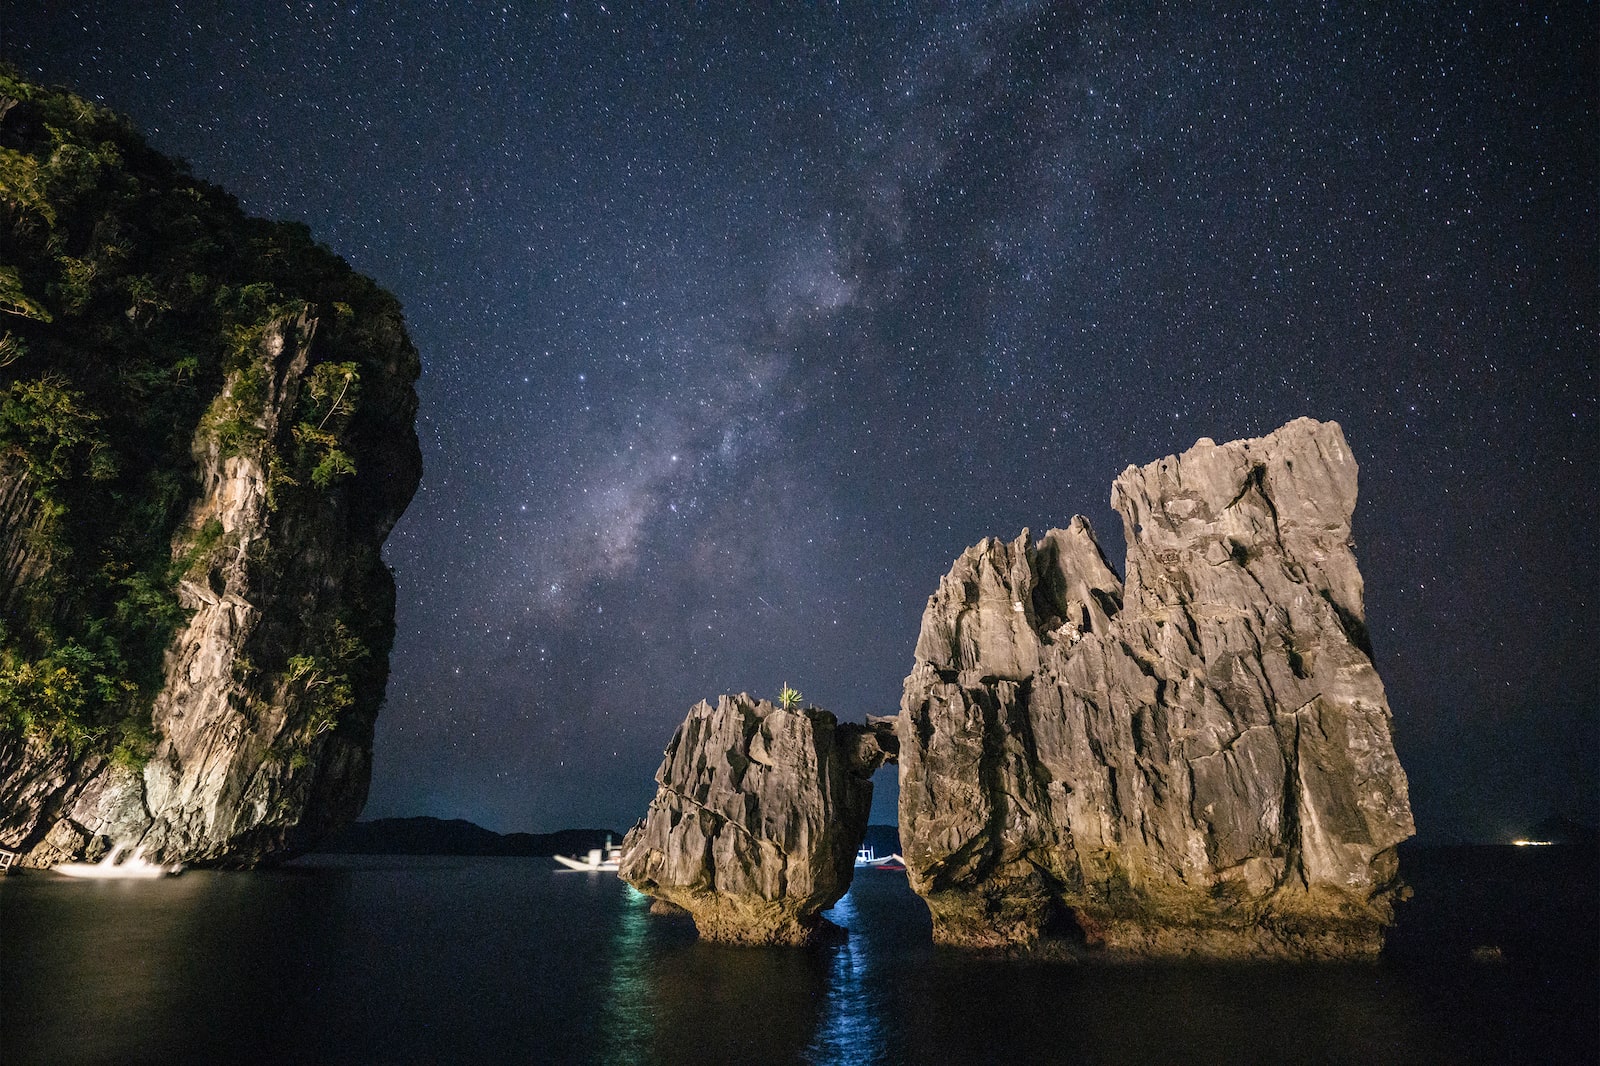 El Nido rock formations against starry night skies